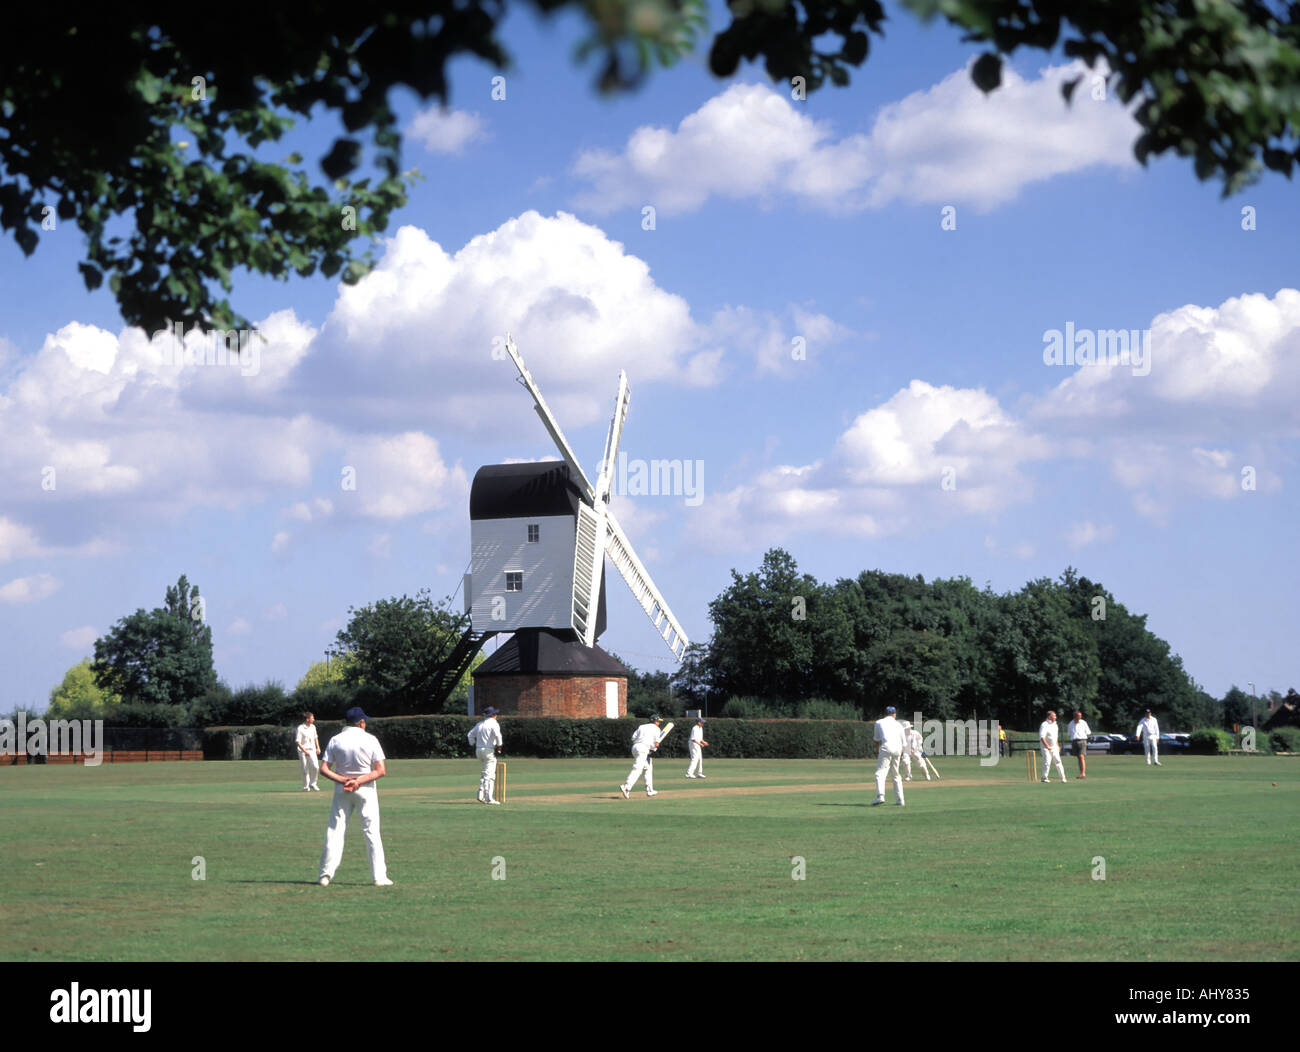 Iconic fundamentale England idyllisches Dorf grün Cricket Match bowler Batsman & Feldspieler Mountnessing Post Mühle darüber hinaus in der Landschaft von Essex UK Stockfoto